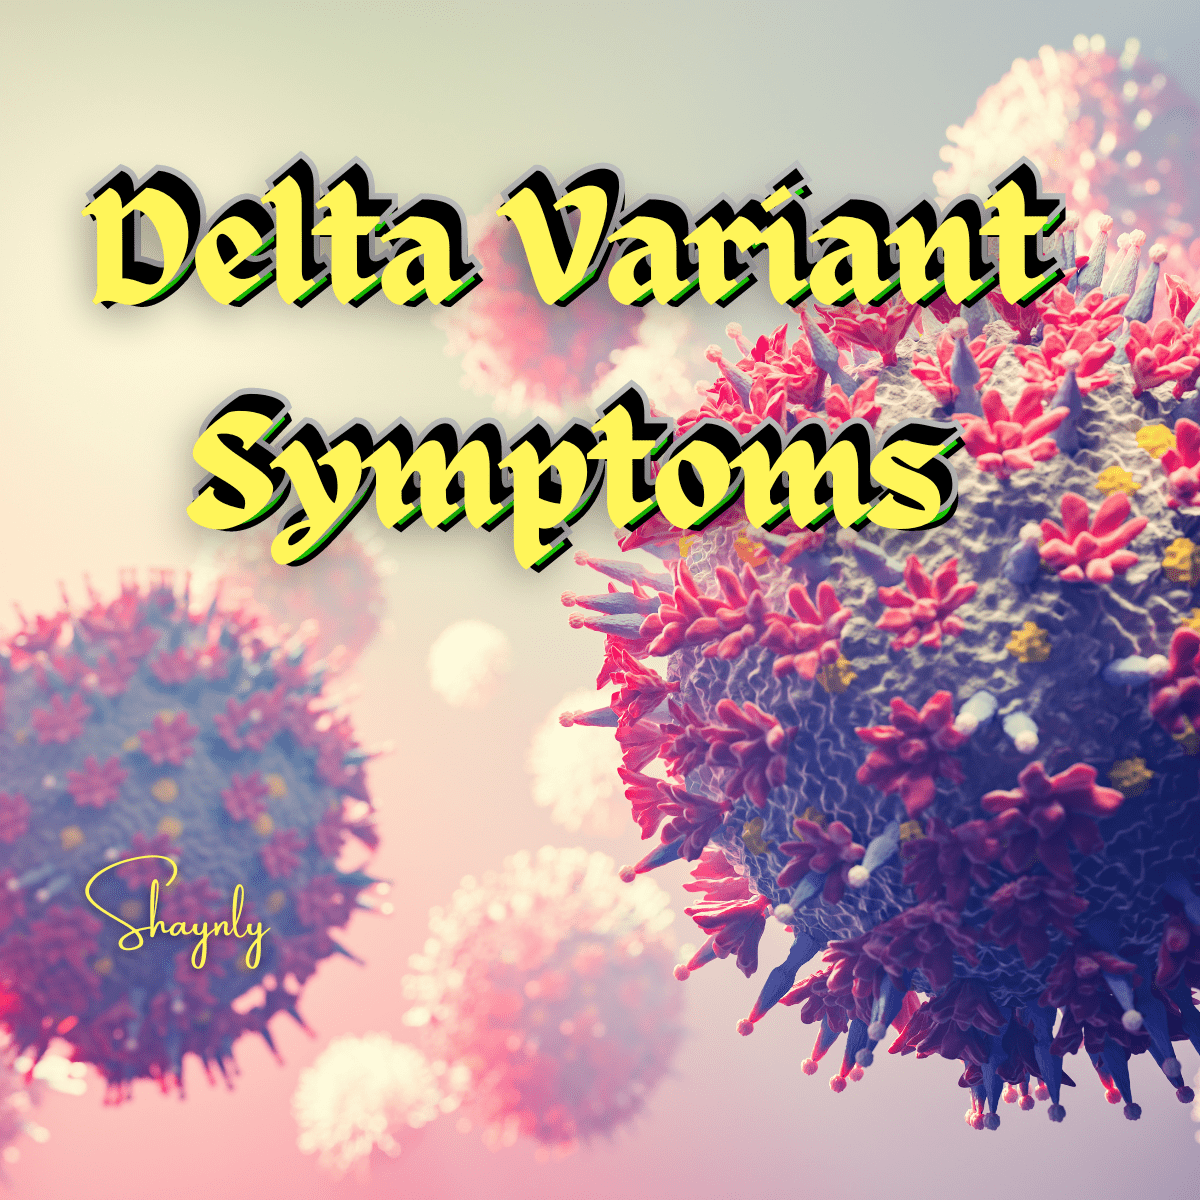 Symptoms of Delta Variant